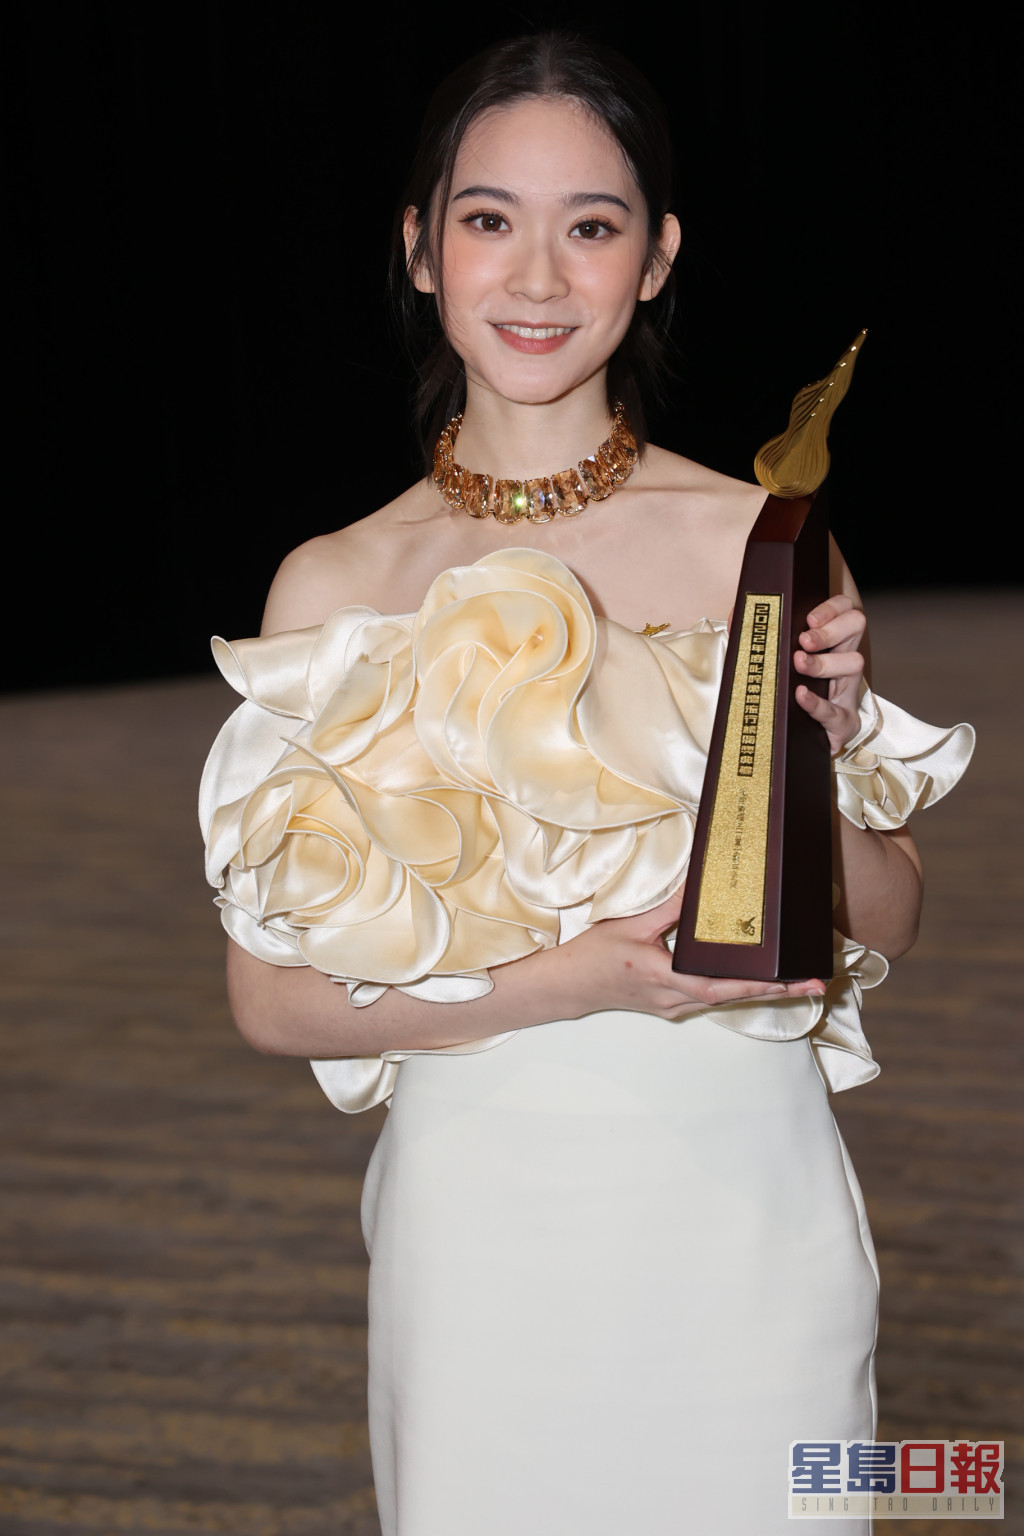 云浩影（Cloud）夺得「叱咤乐坛生力军女歌手」金奖。